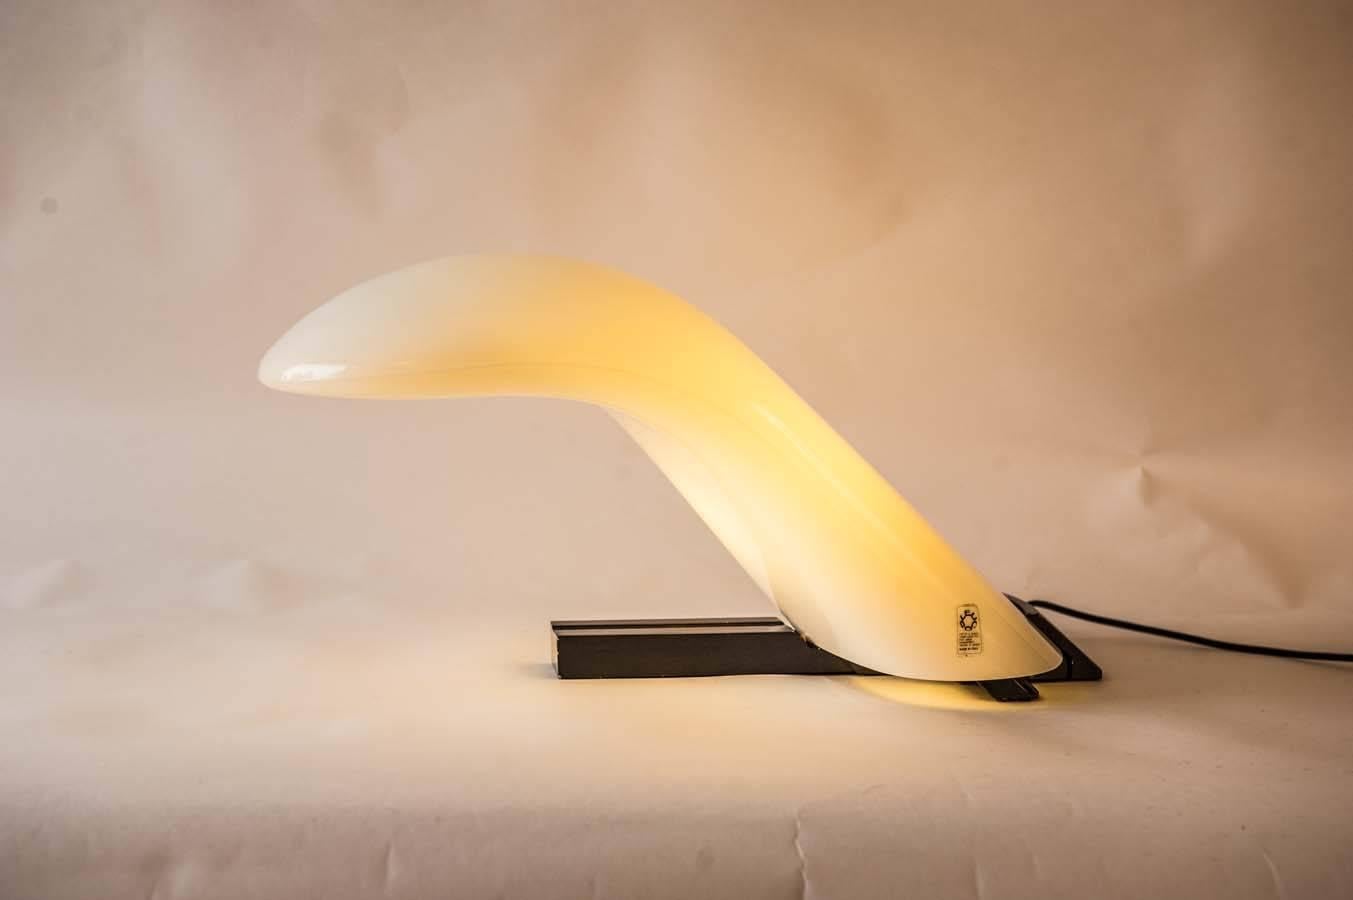 Merveilleuse lampe de table ou de bureau en forme d'arche par le spécialiste italien de l'éclairage Leucos. Sa base est en acier de couleur noire. L'ampoule elle-même est placée dans un objet en verre de Murano de forme aérodynamique qui semble